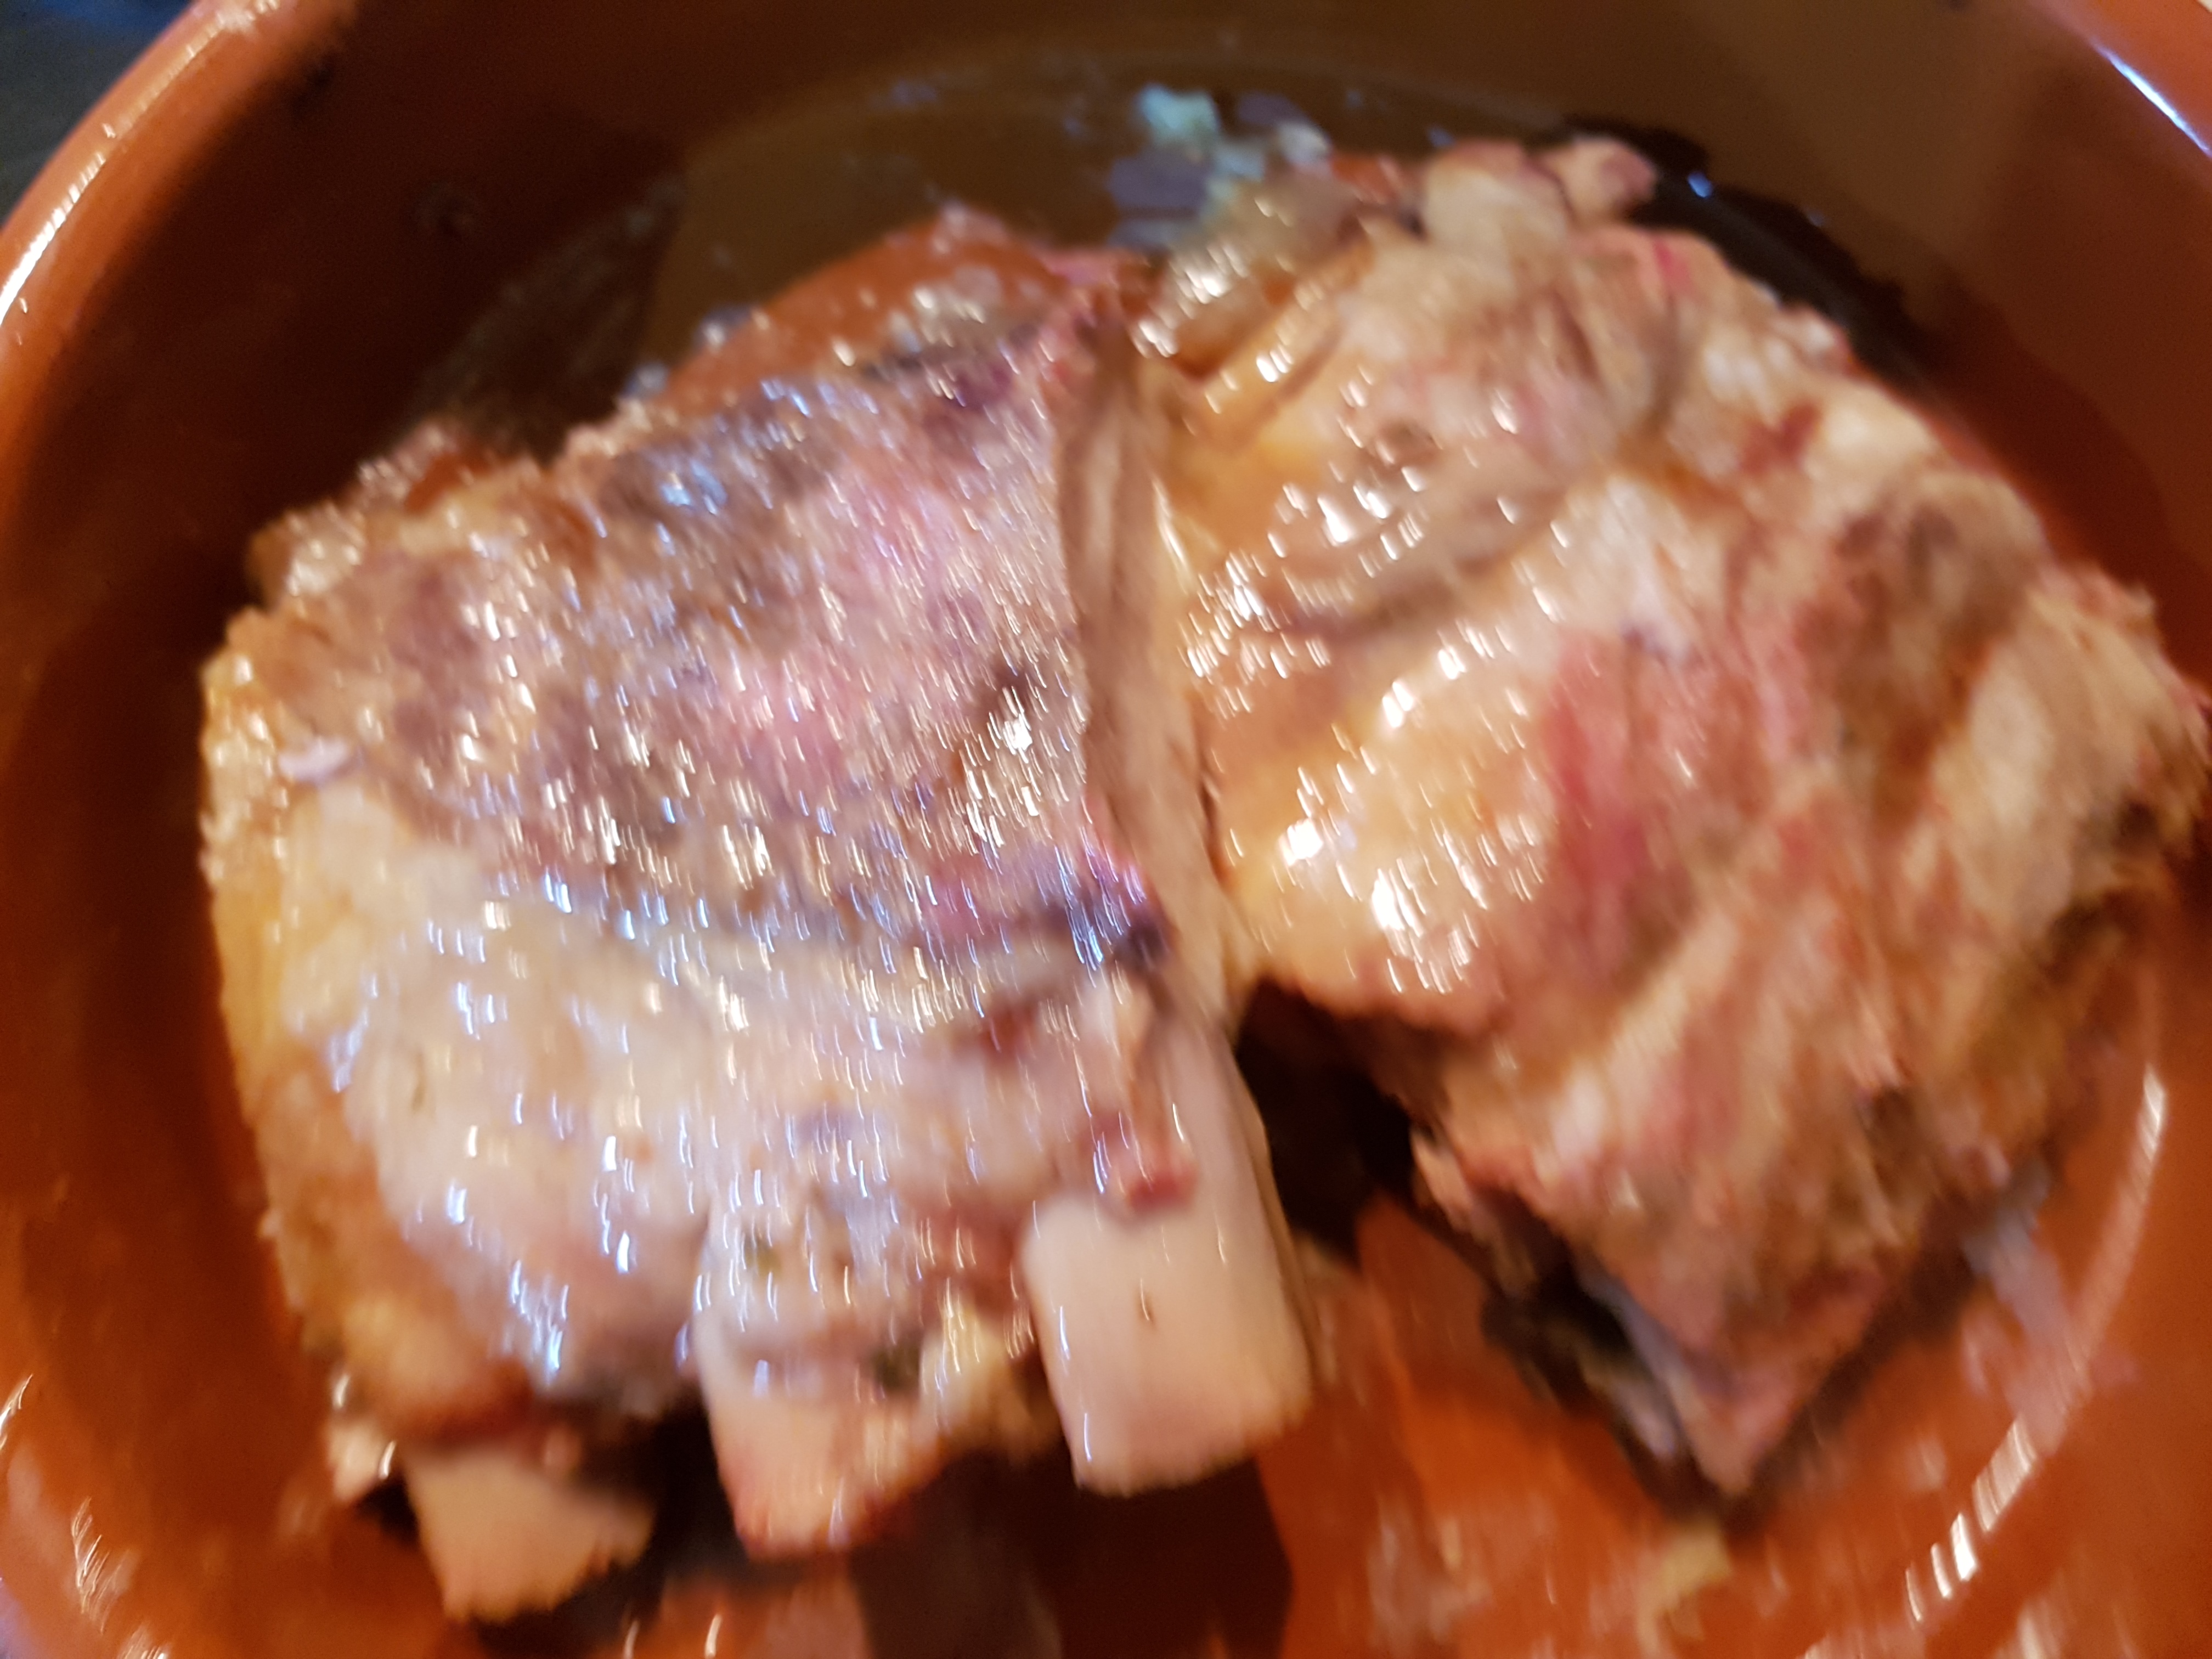 Costita de porc marinata in cidru la slow cooker Crock-Pot